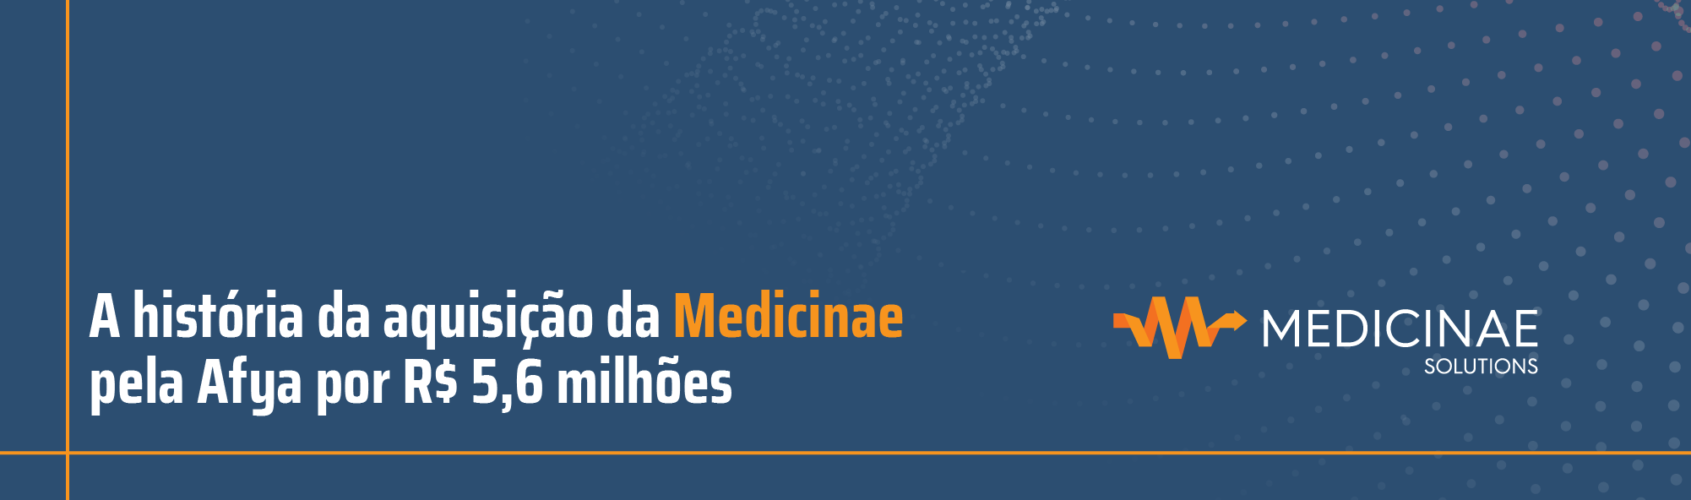 A história da aquisição da Medicinae pela Afya por R$ 5,6 milhões